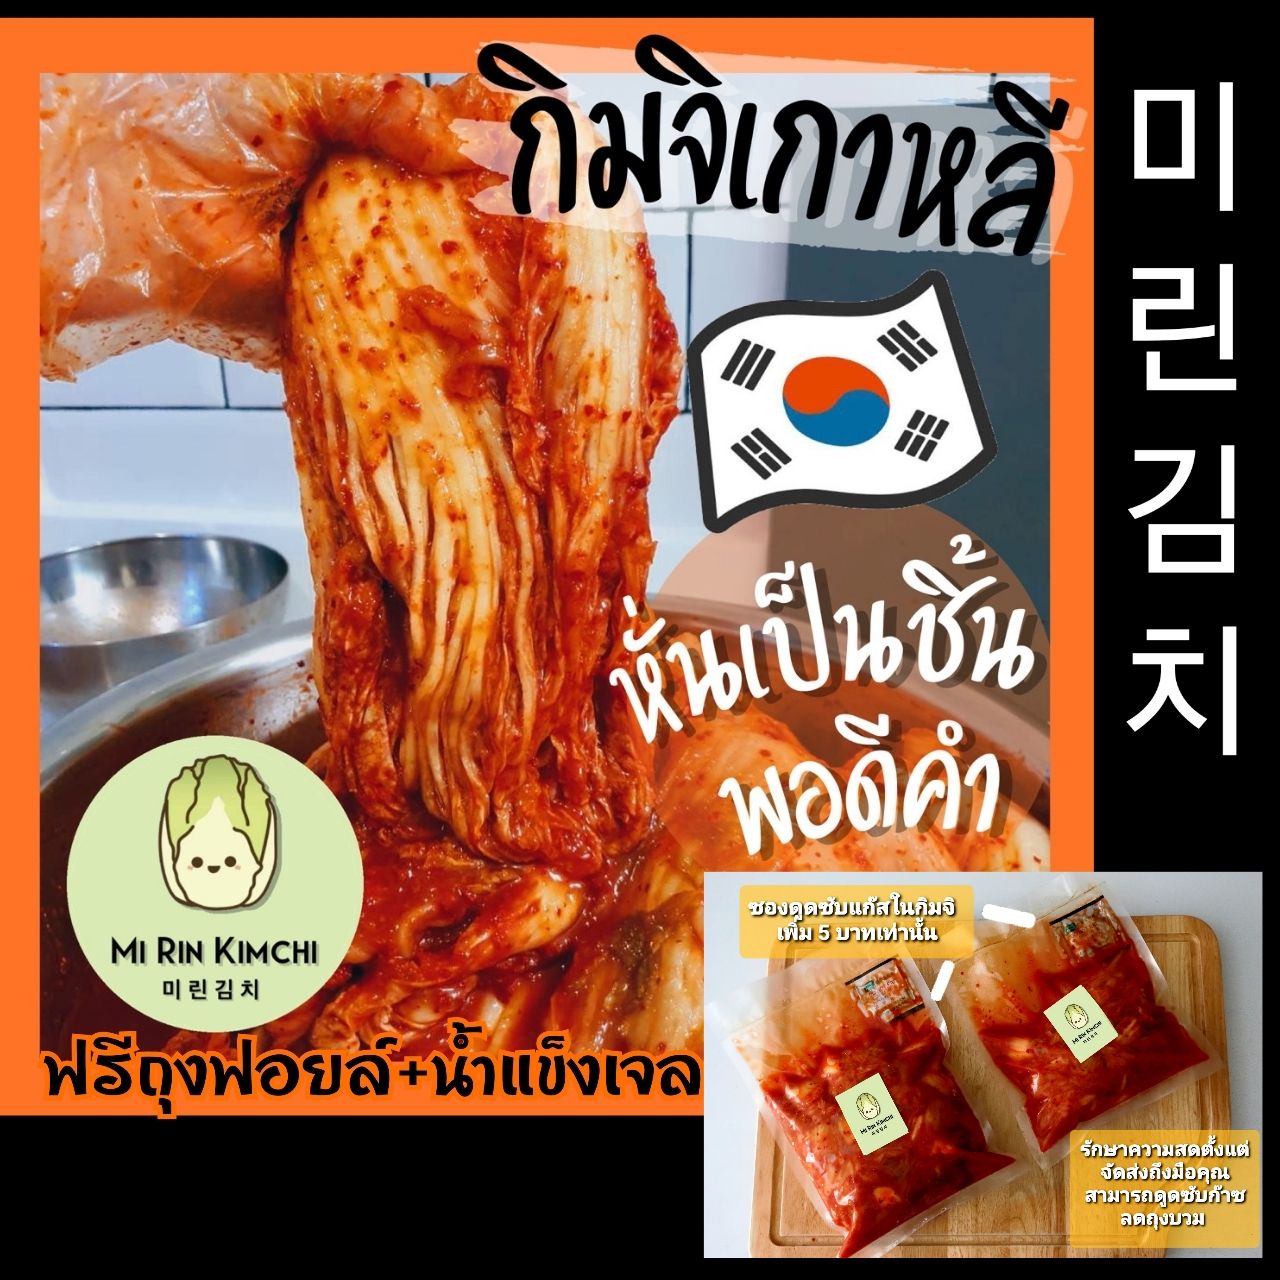 미린김치 กิมจิผักกาดขาว กิมจิเกาหลี ที่ทำเองโดยคนเกาหลีแท้ๆครับ ขนาด  500g (ส่งKerryเท่านั้น)